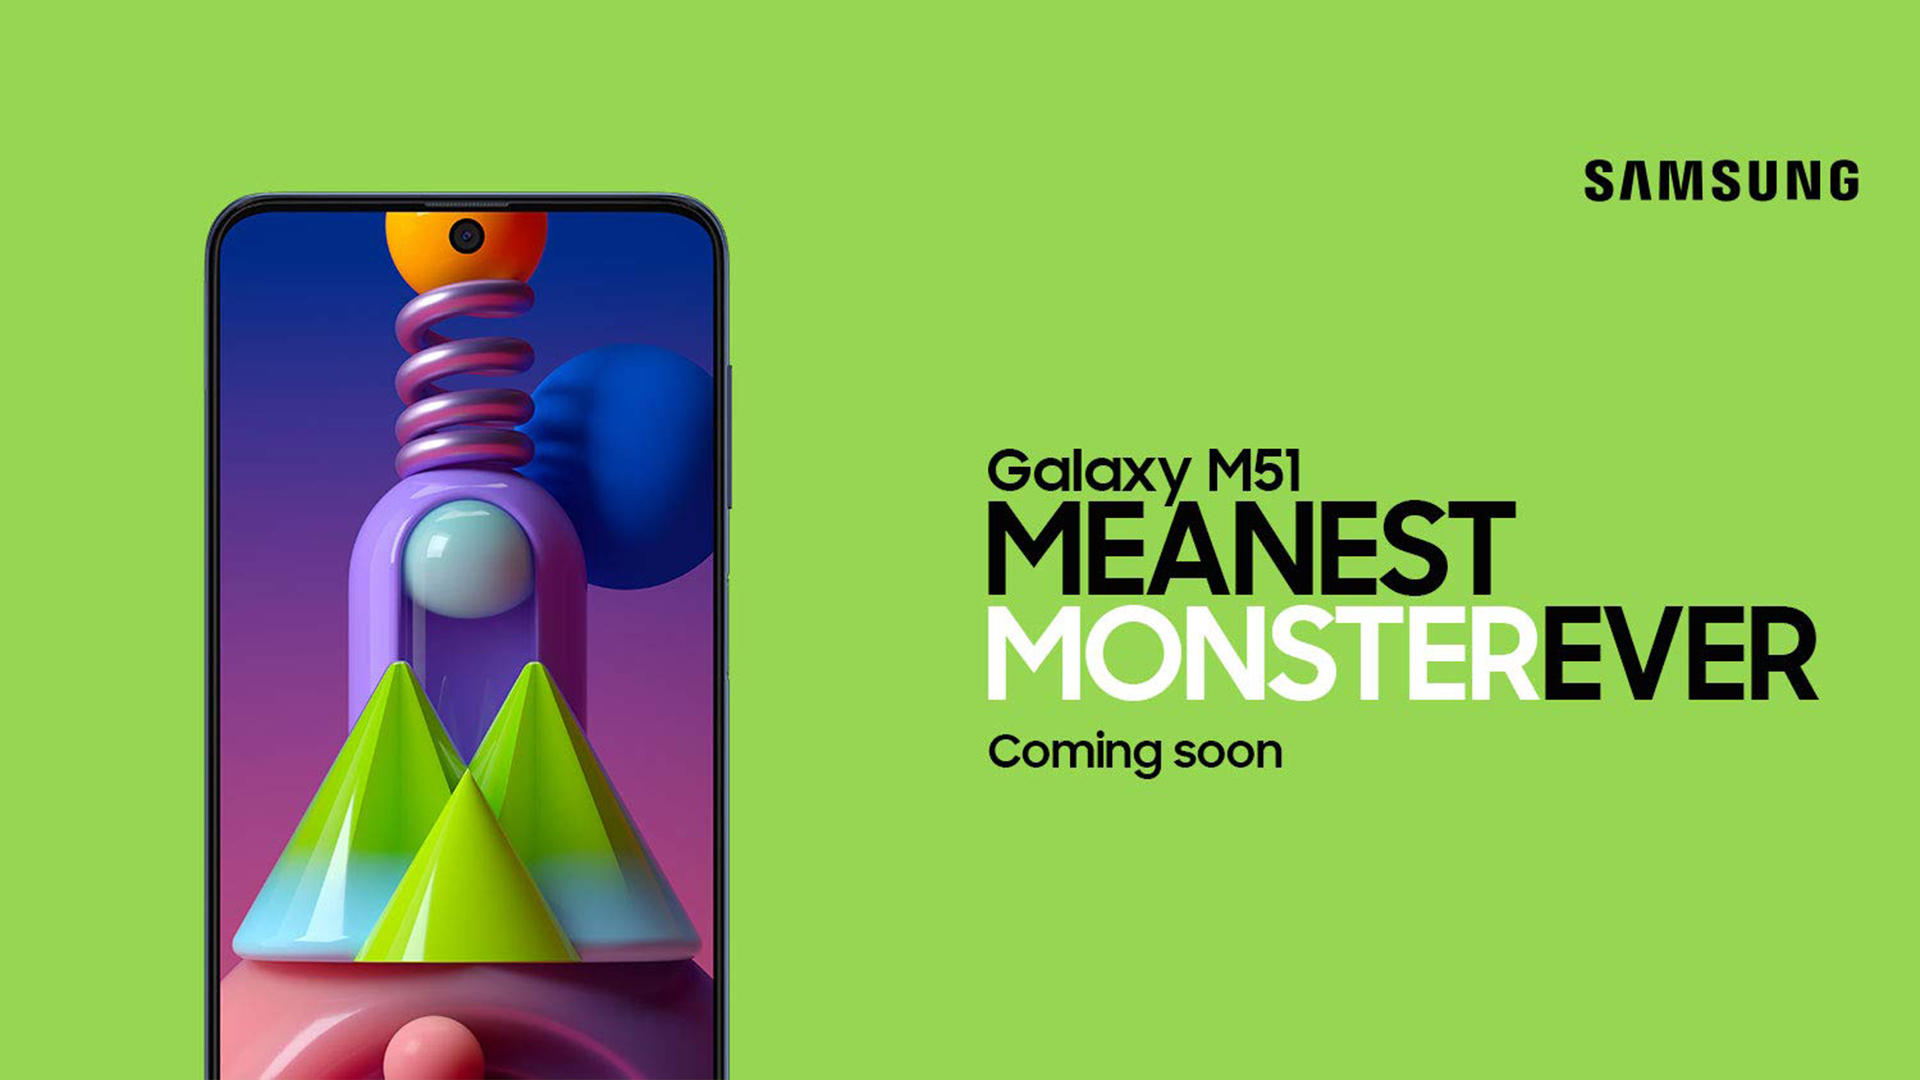 Samsung đã chính thức đăng tải video giới thiệu Galaxy M51, hứa hẹn sự đột phá và nổi bật trong phân khúc smartphone giá rẻ!